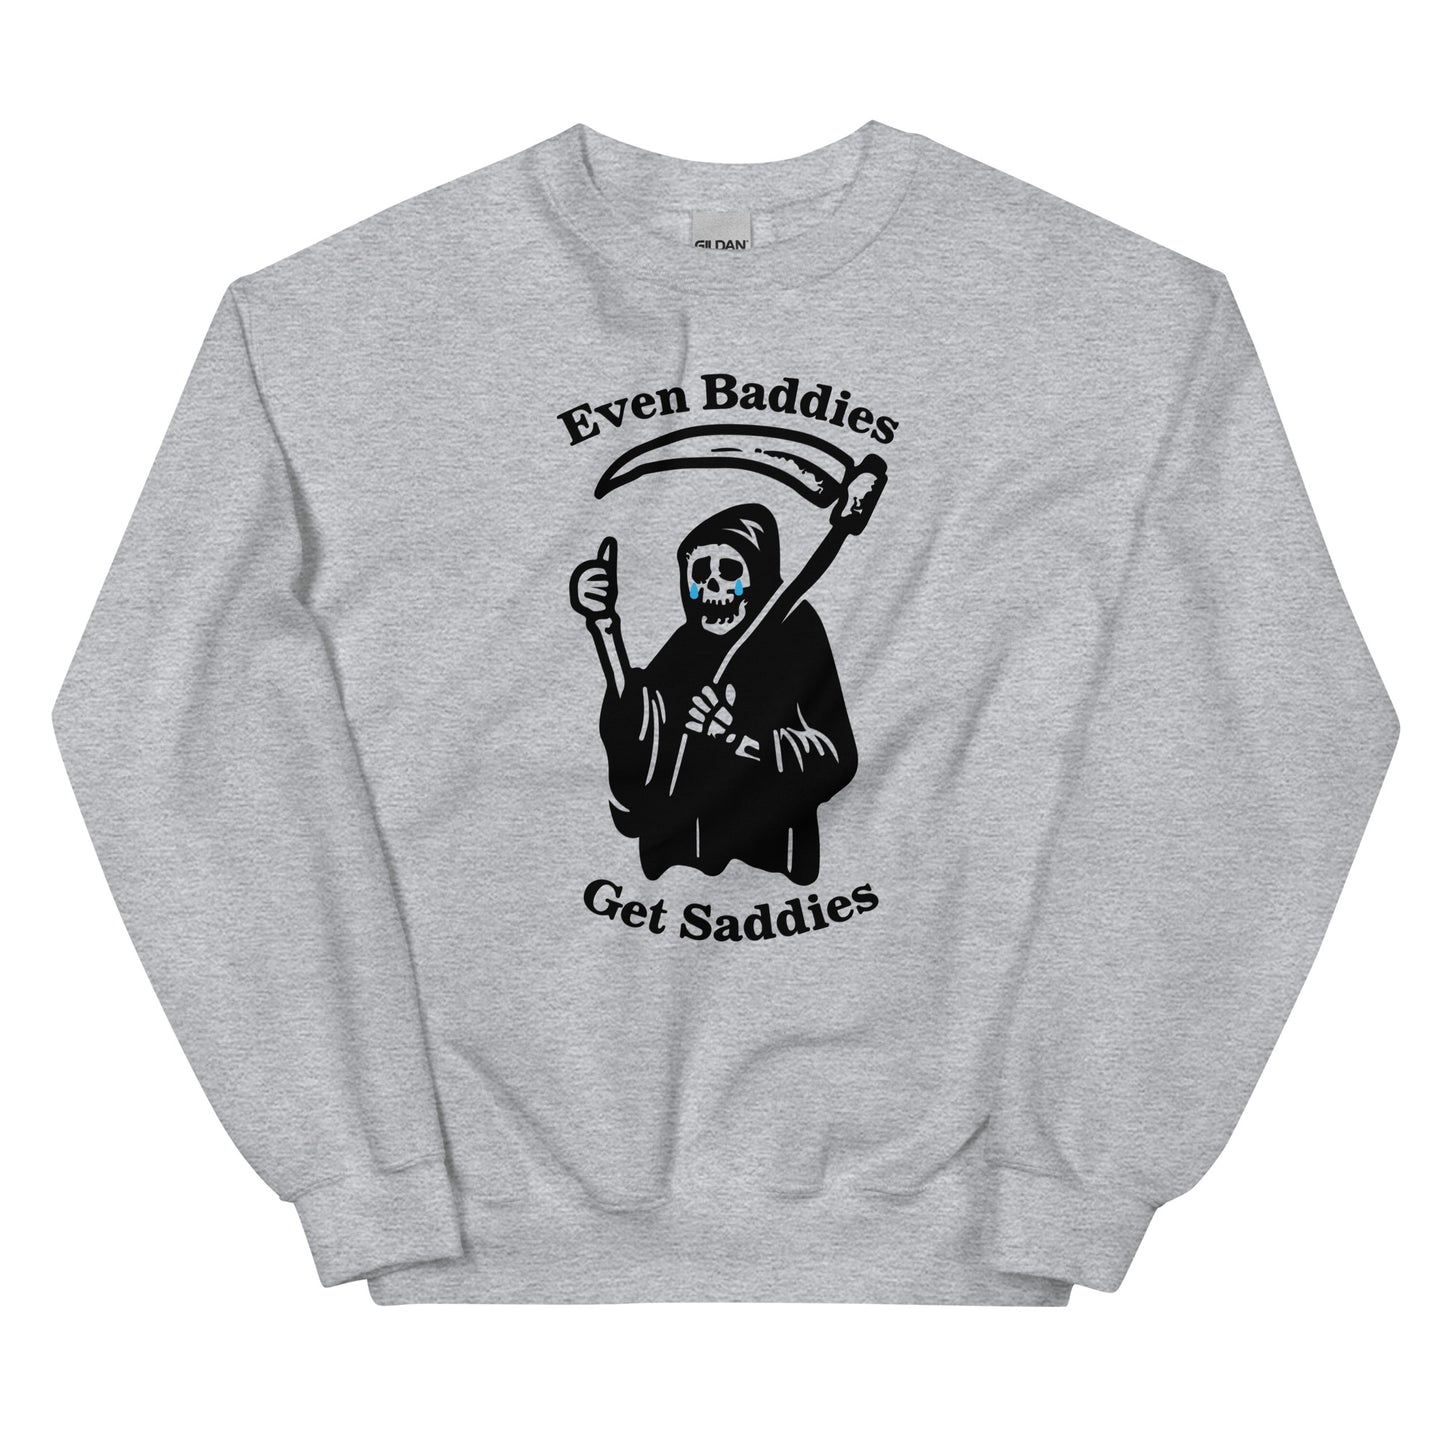 Even Baddies Get Saddies Unisex Sweatshirt